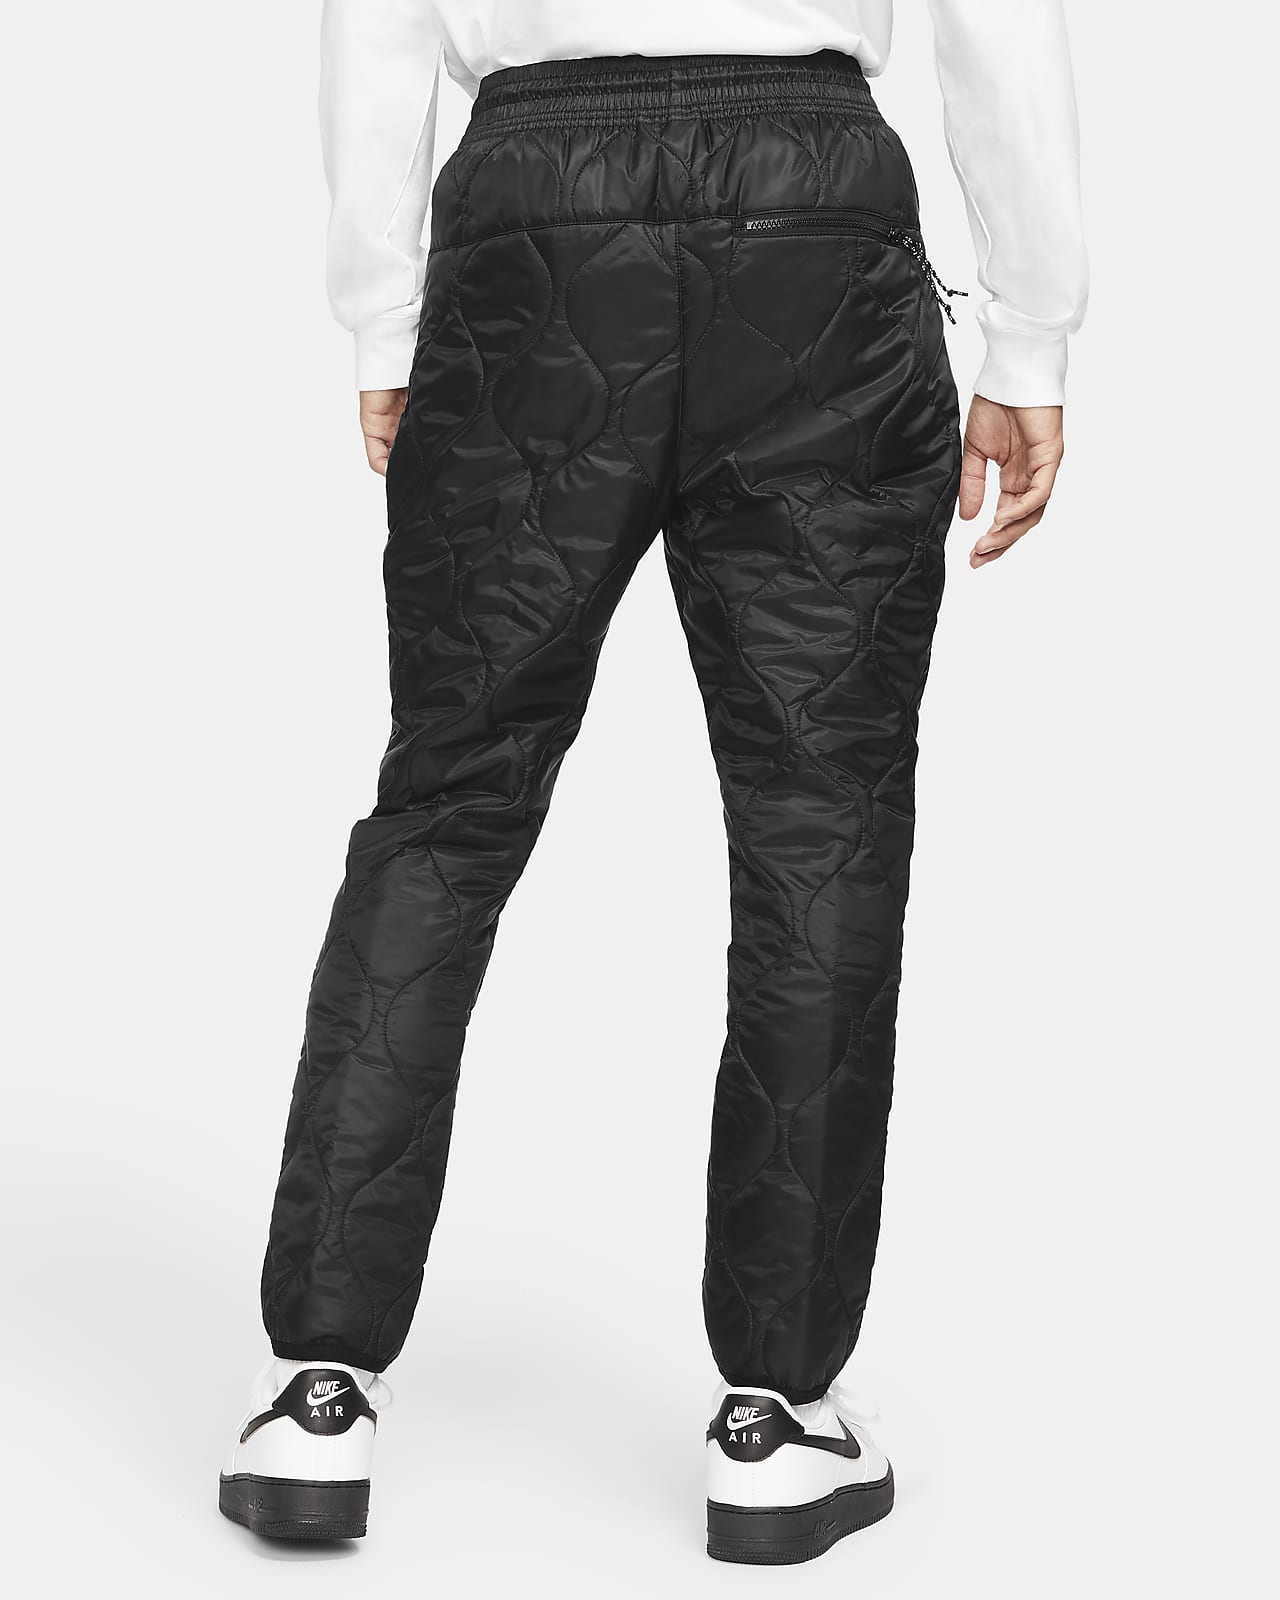 くろいぬ男子体操服XL ナイキ ウィンターライズド 中綿ジャケット ジョガーパンツ 上下セット 黒